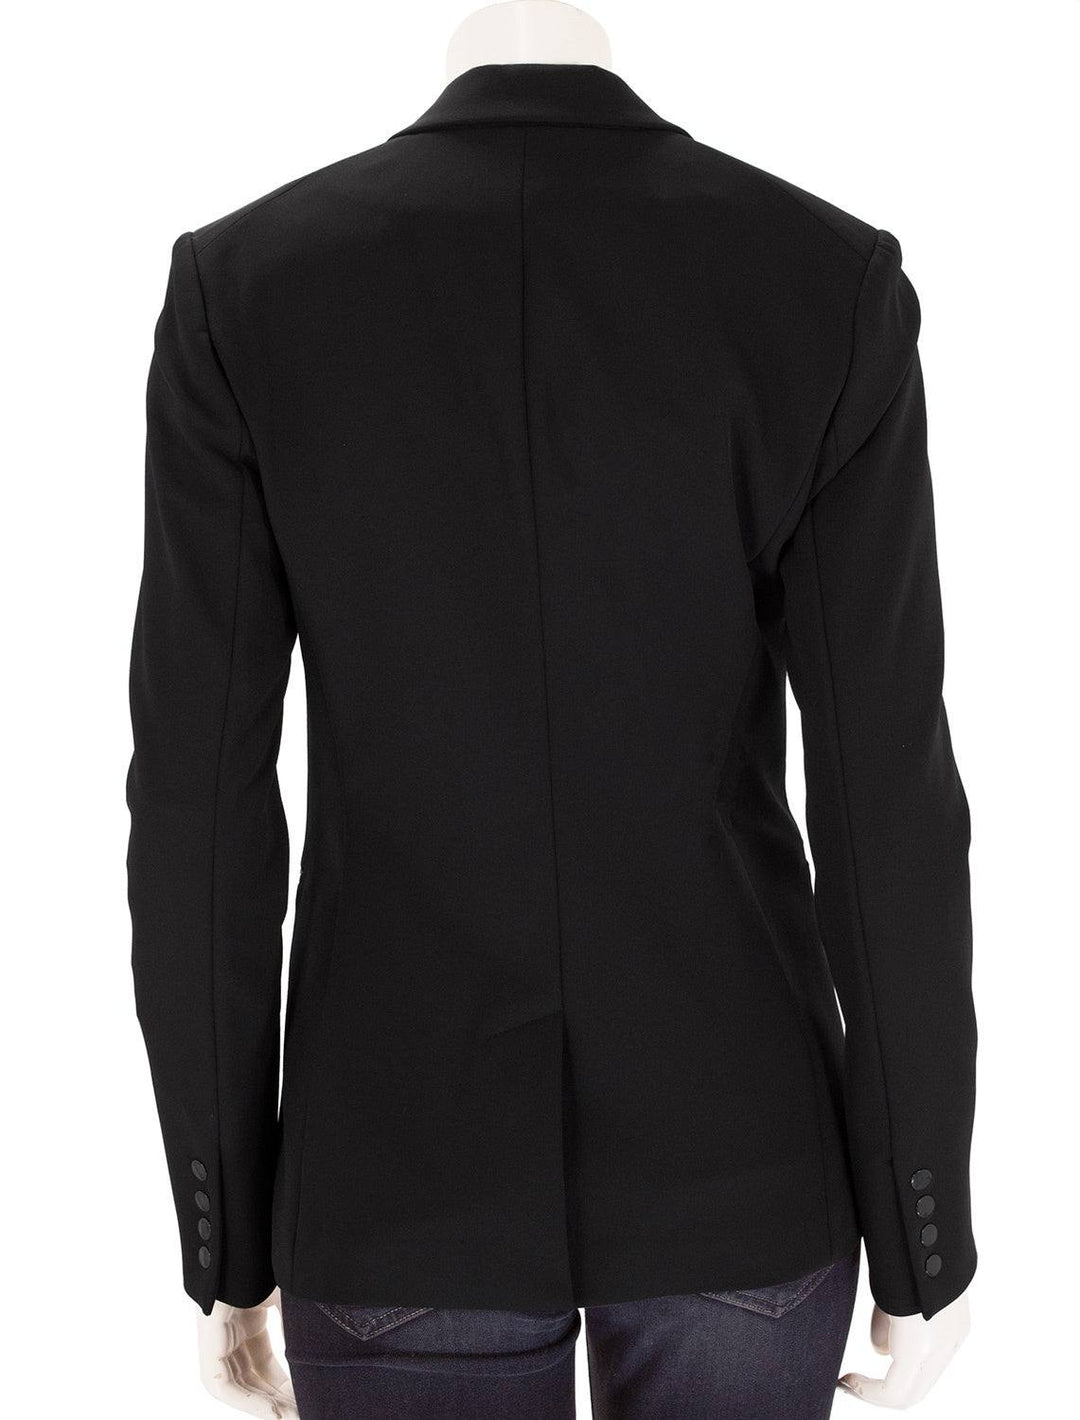 scuba jacket in black (2)